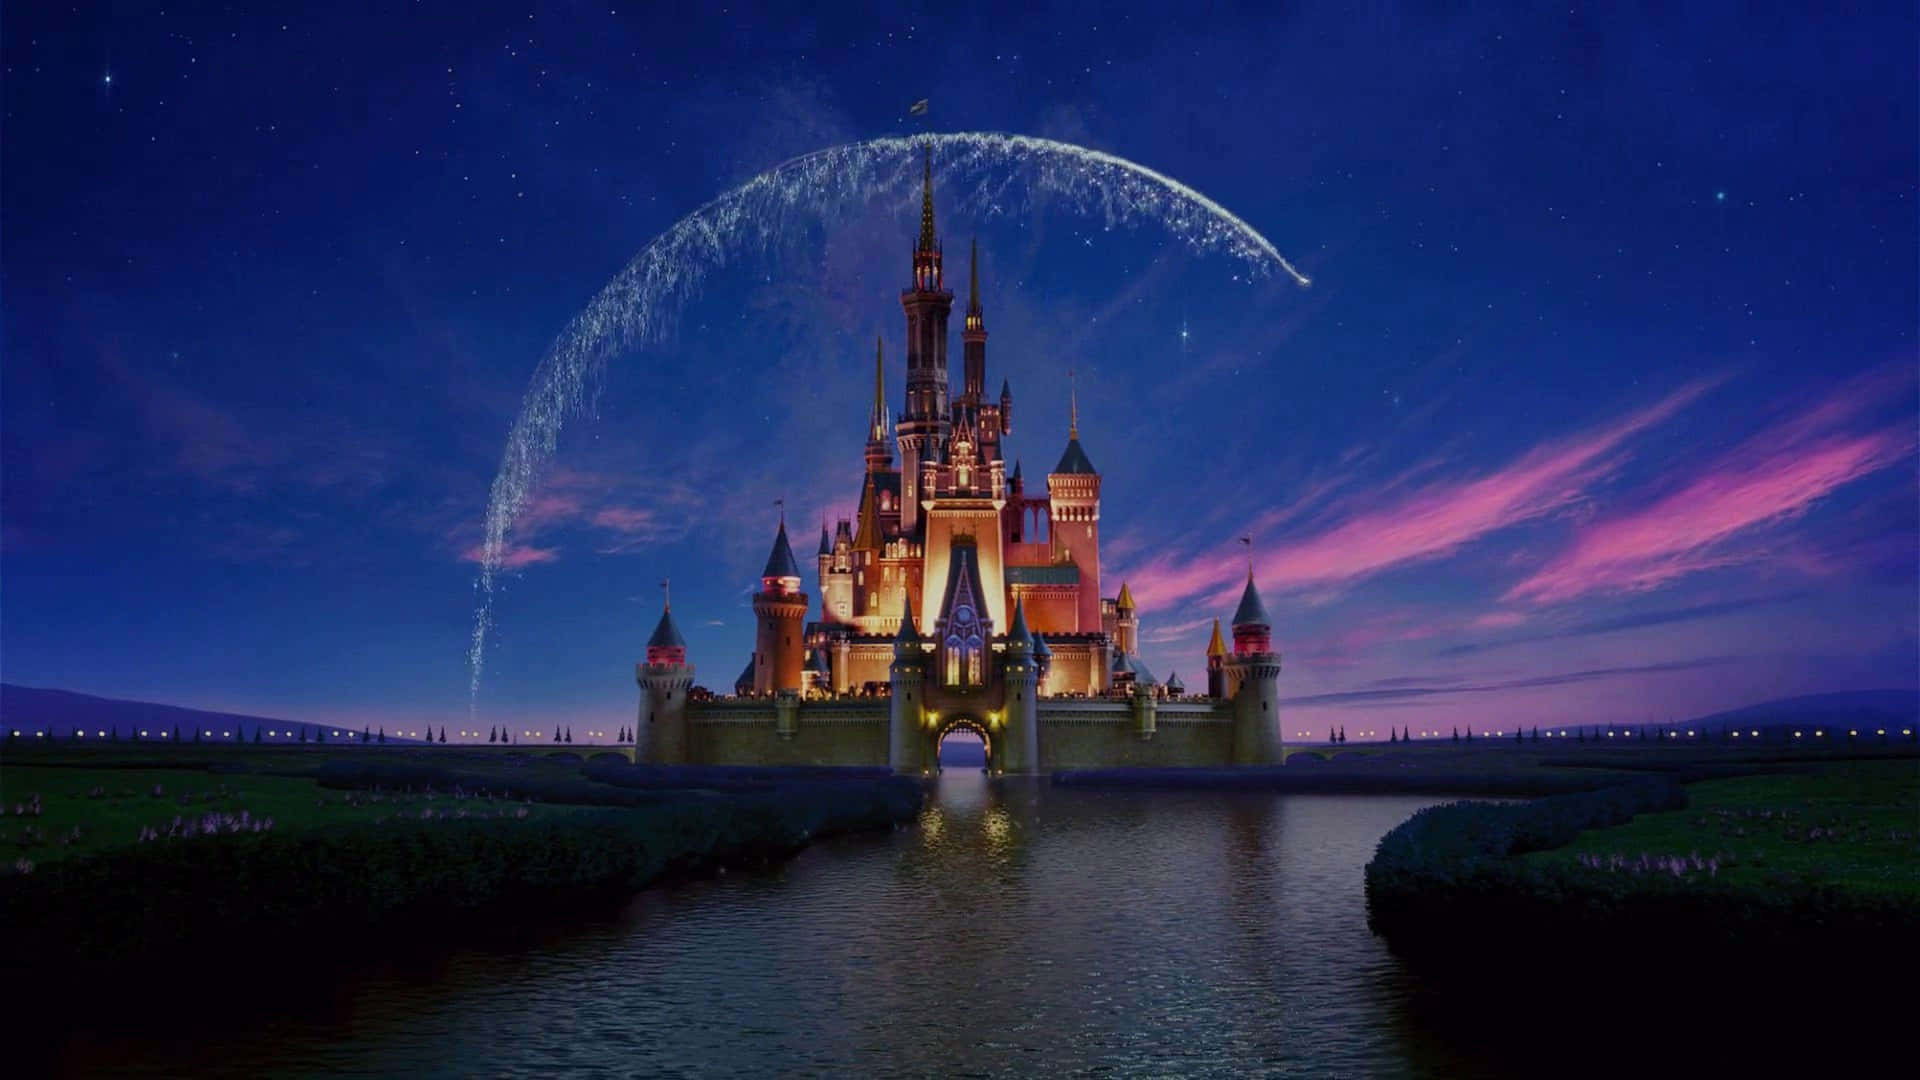 Genießensie Dieses Ästhetische Disney-laptop-hintergrundbild Und Fühlen Sie Sich Wie Teil Einer Magischen Welt. Wallpaper